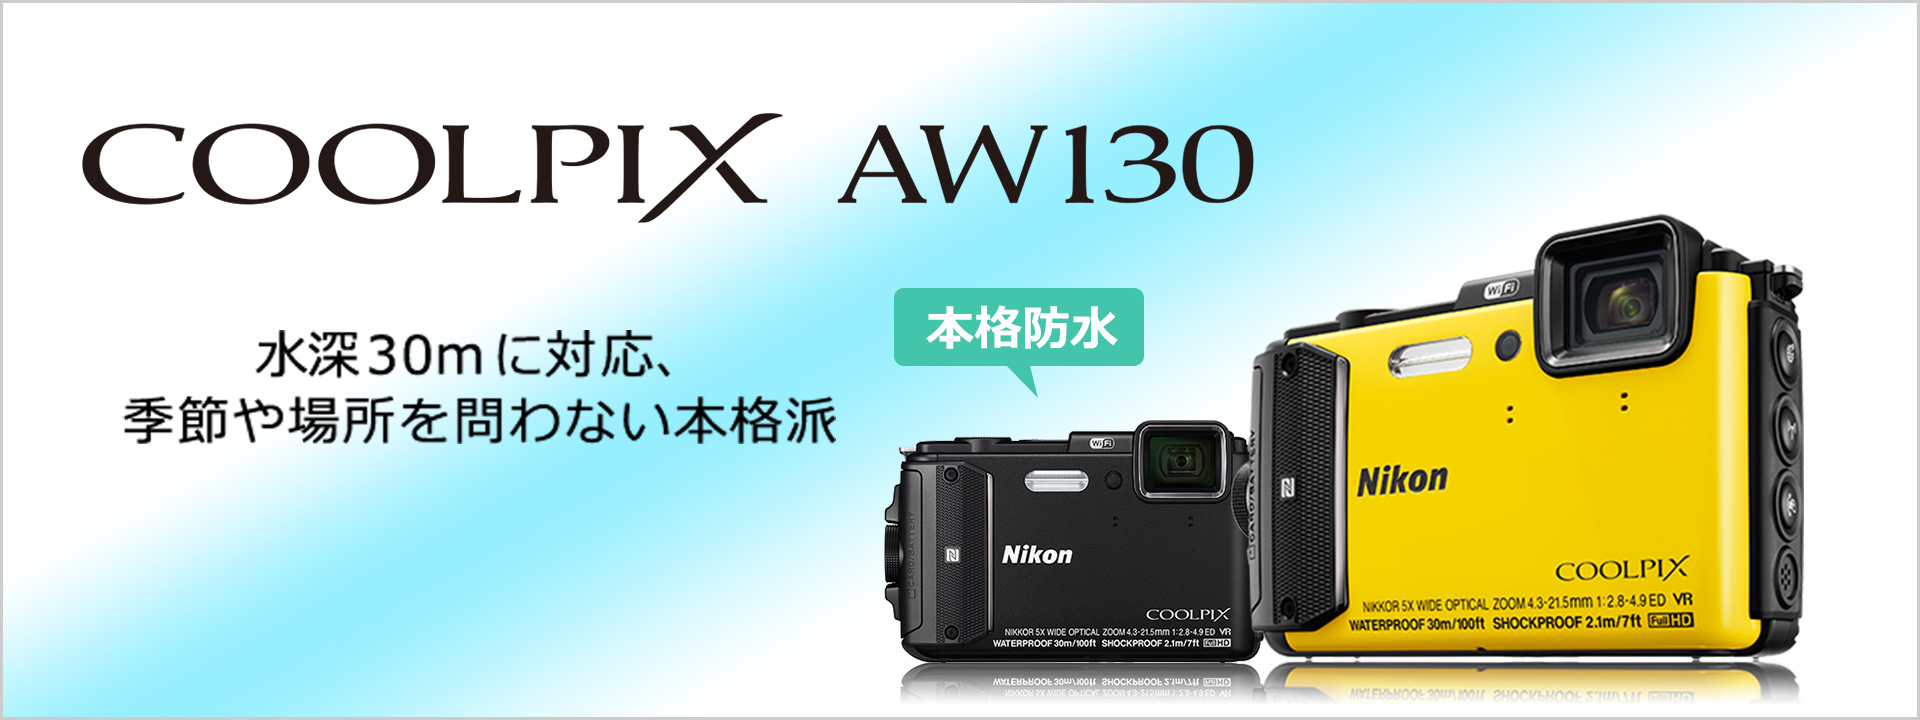 Nikon COOLPIX AW130 デジカメ